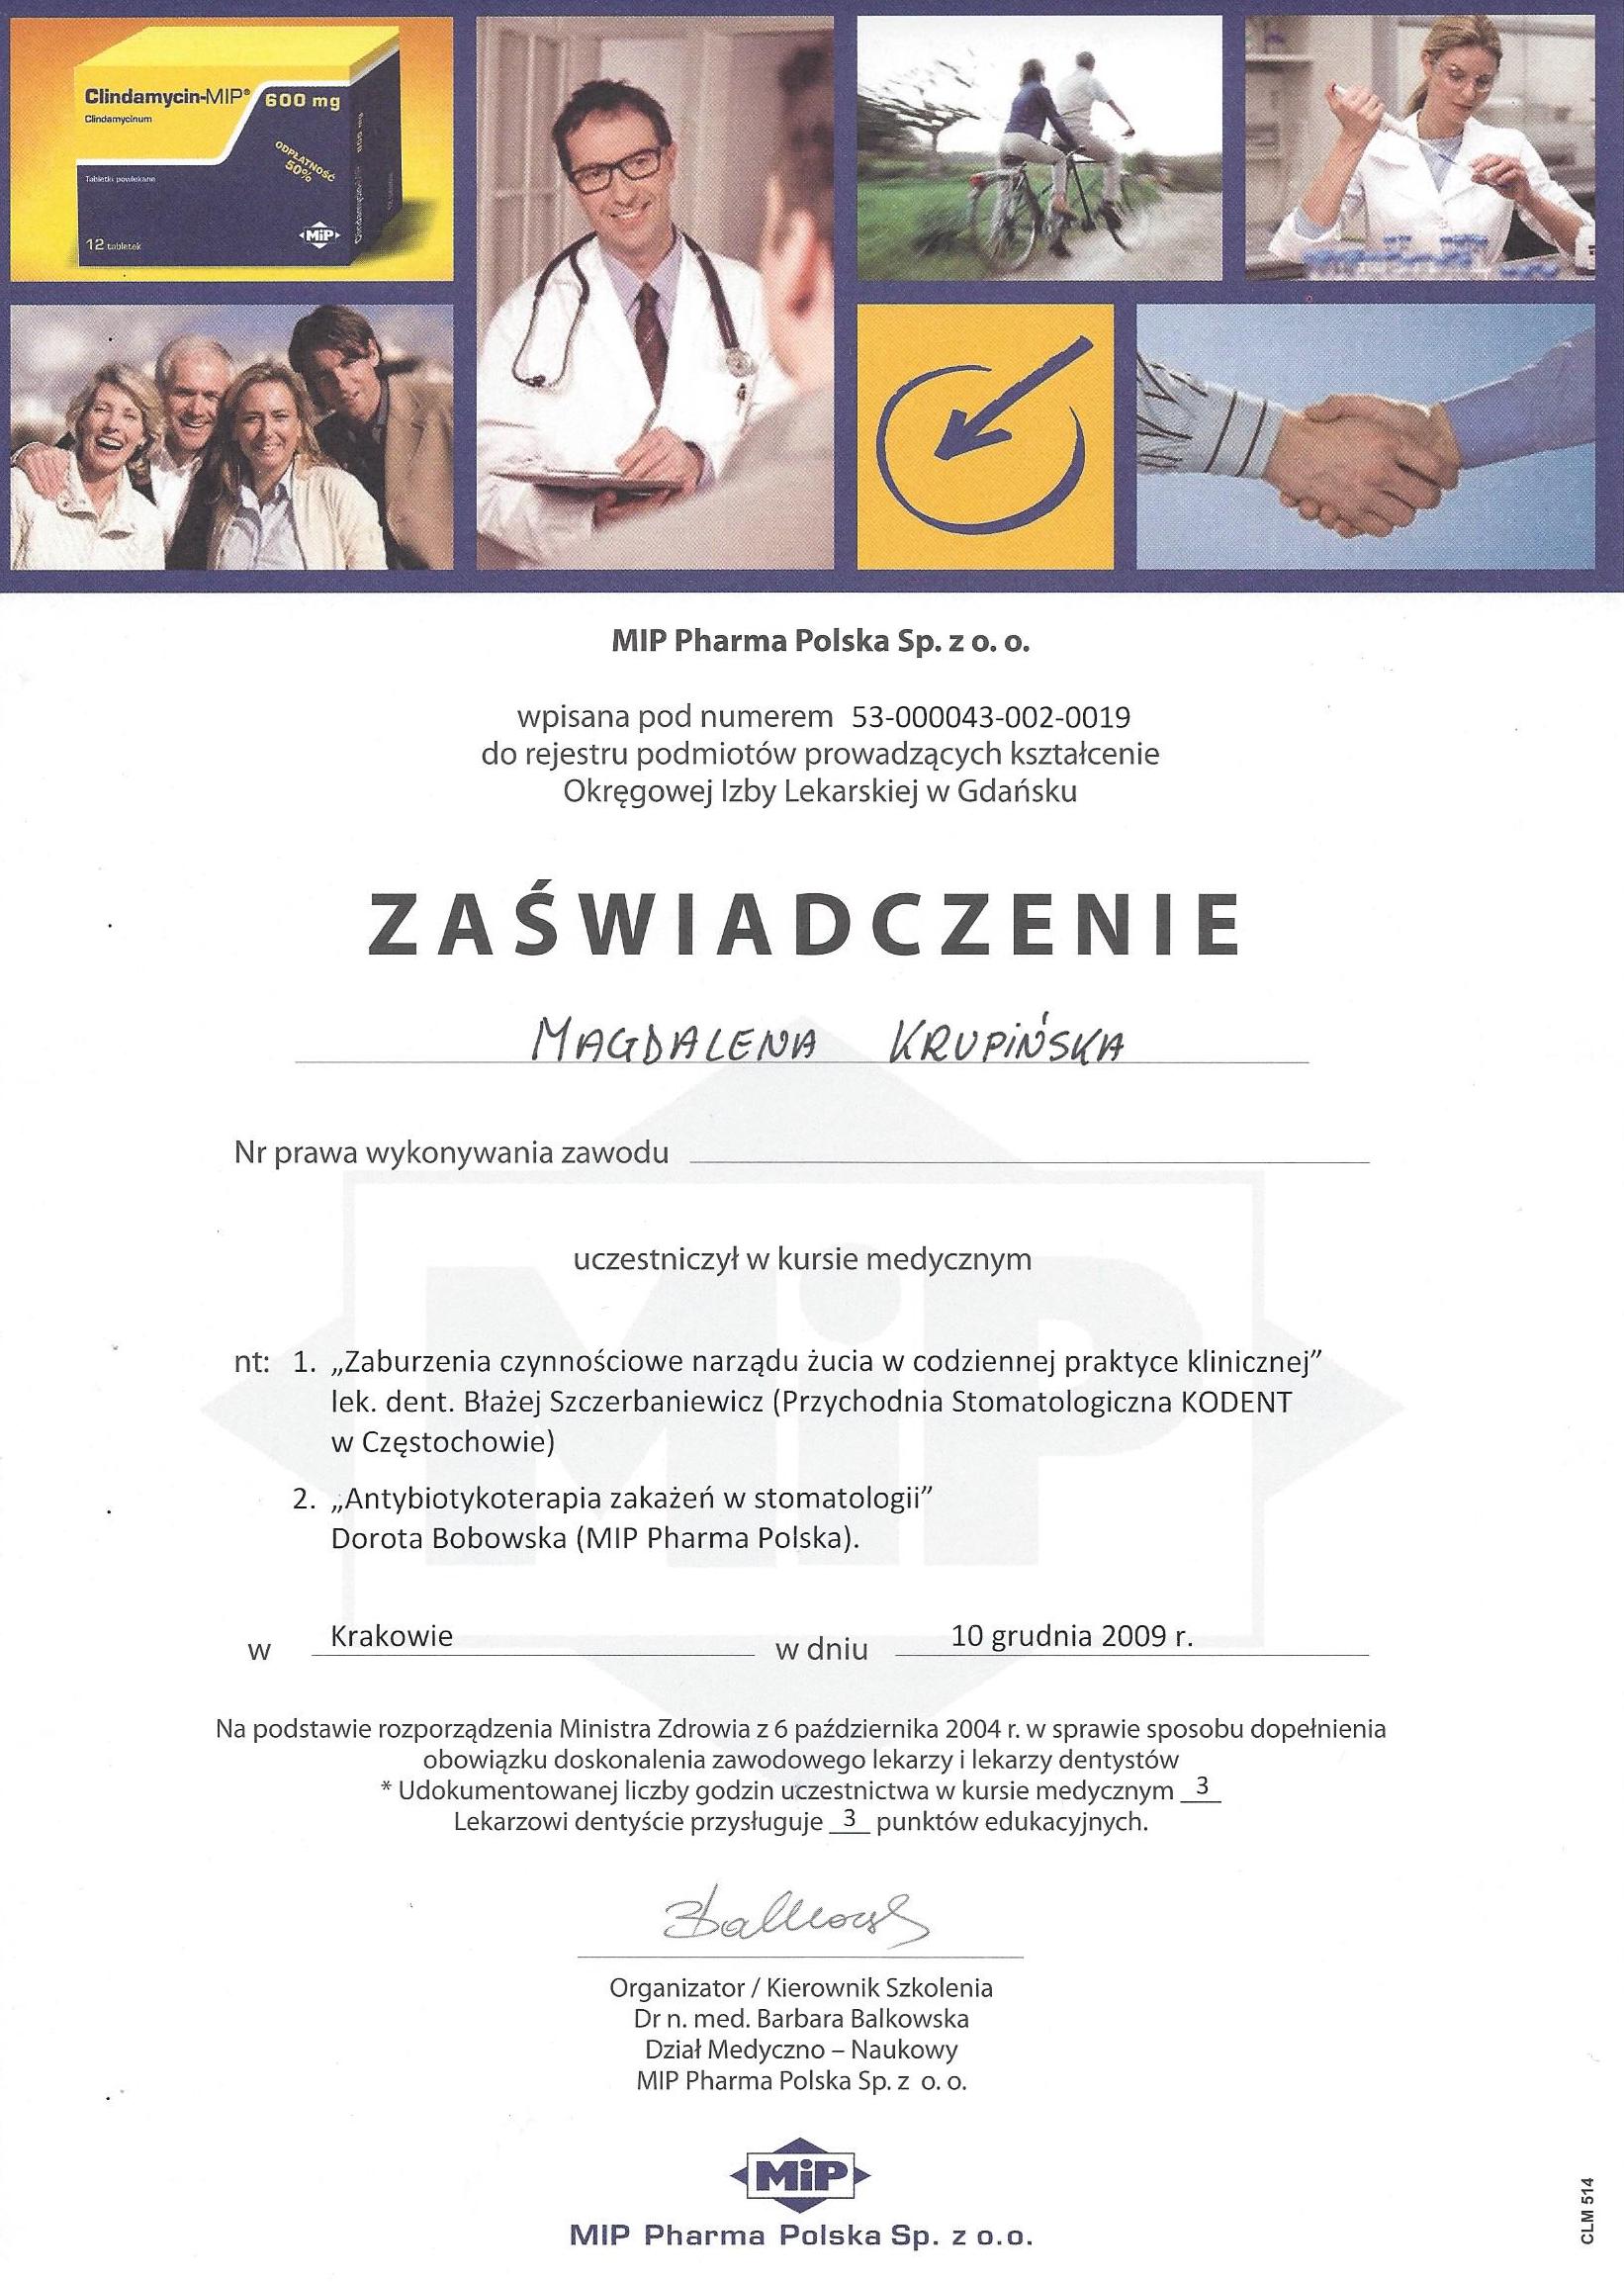 Magdalena Krupińska certyfikat 47